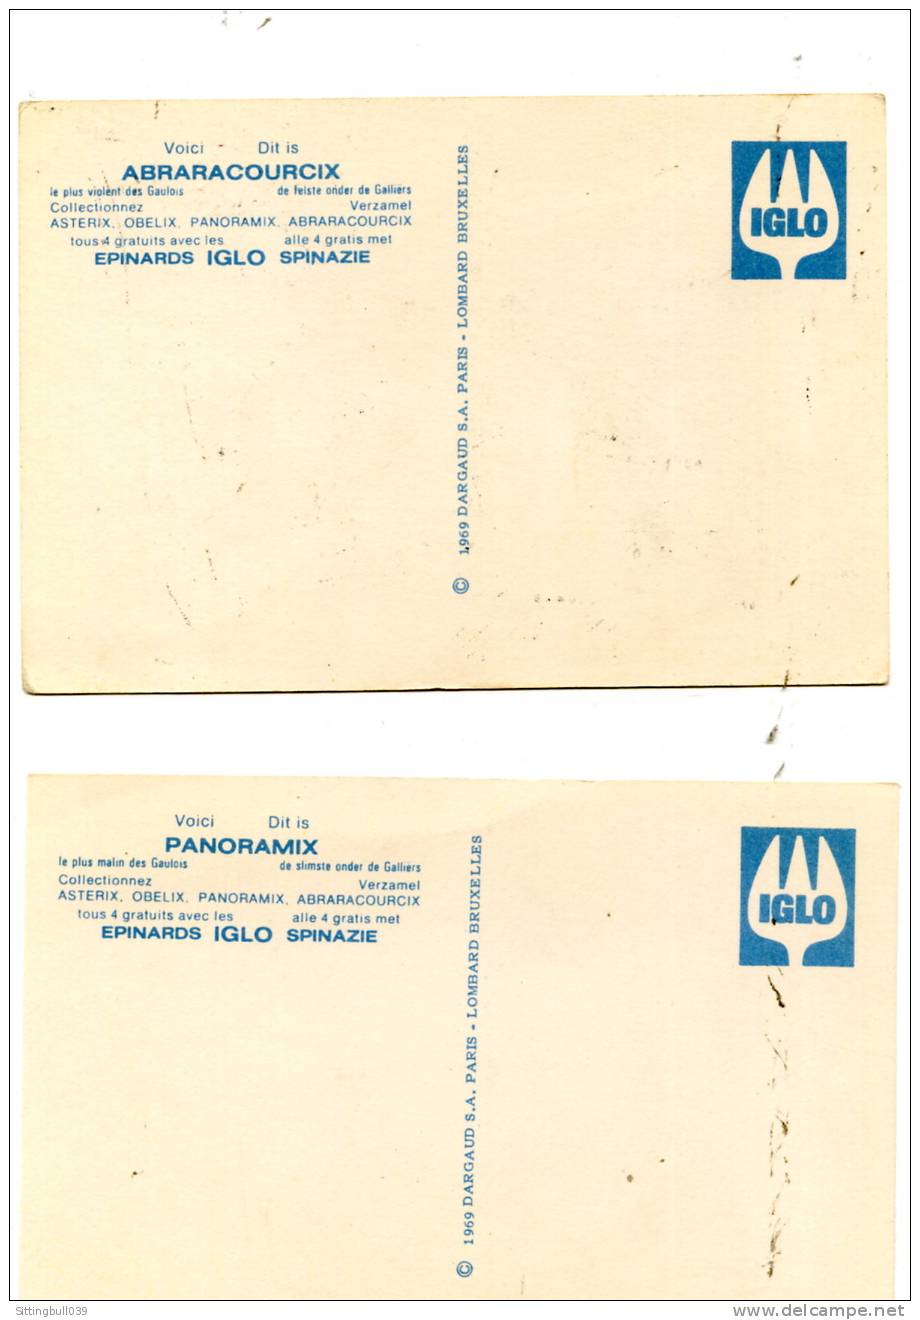 ASTERIX. TRES RARE SERIE COMPLETE DE 4 CARTES POSTALES PUB  EPINARDS IGLO. 1969 DARGAUD S. A. PARIS - LOMBARD BRUXELLES. - Astérix